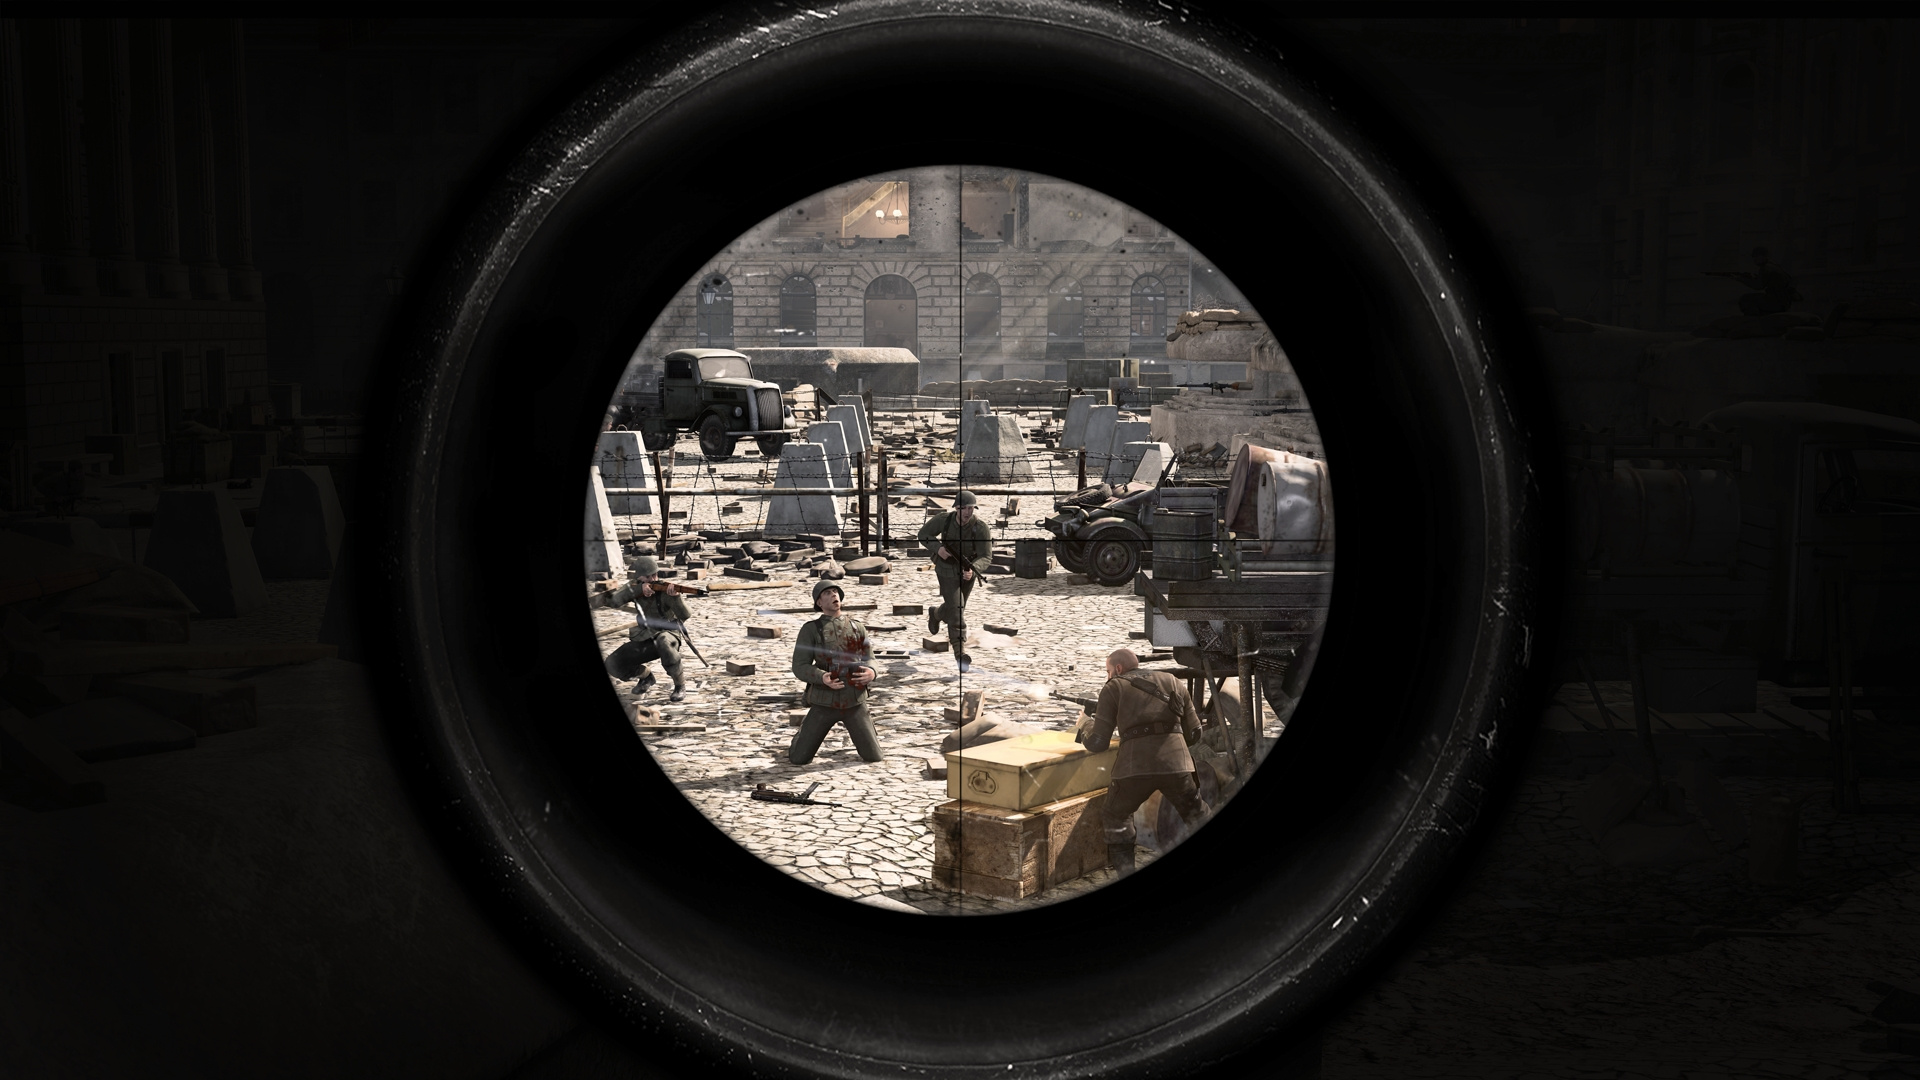 download sniper elite v2 ps3